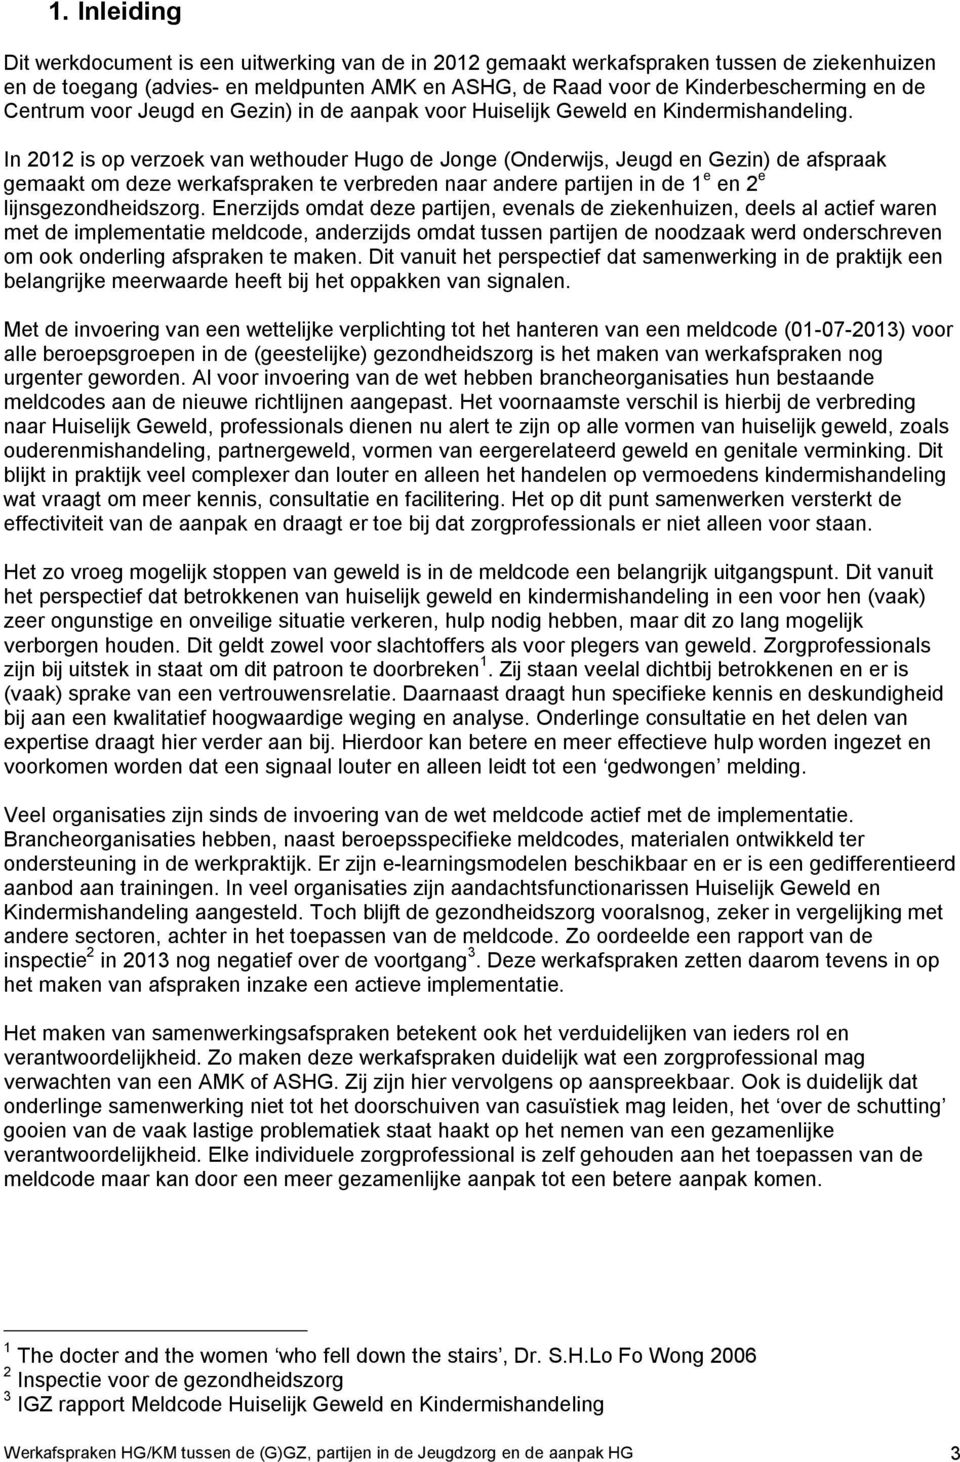 In 2012 is op verzoek van wethouder Hugo de Jonge (Onderwijs, Jeugd en Gezin) de afspraak gemaakt om deze werkafspraken te verbreden naar andere partijen in de 1 e en 2 e lijnsgezondheidszorg.